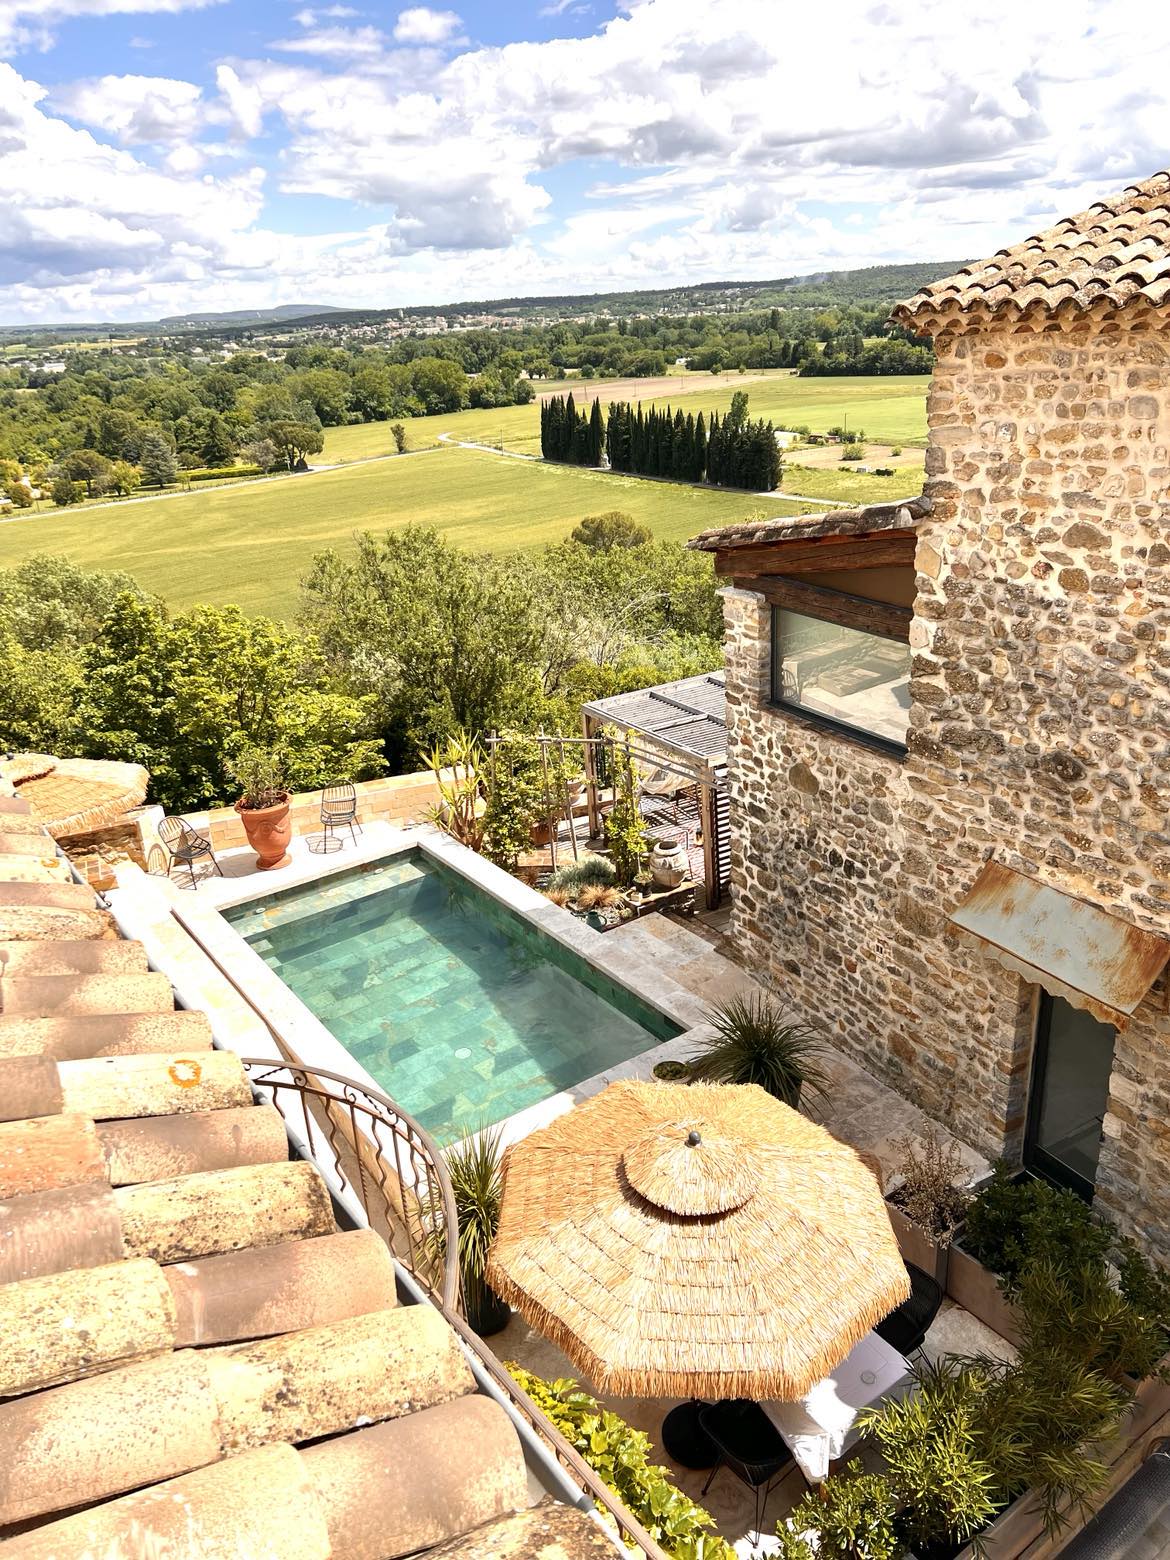 Gite de charme Gard avec jacuzzi intérieur privatif et piscine chauffée privative 